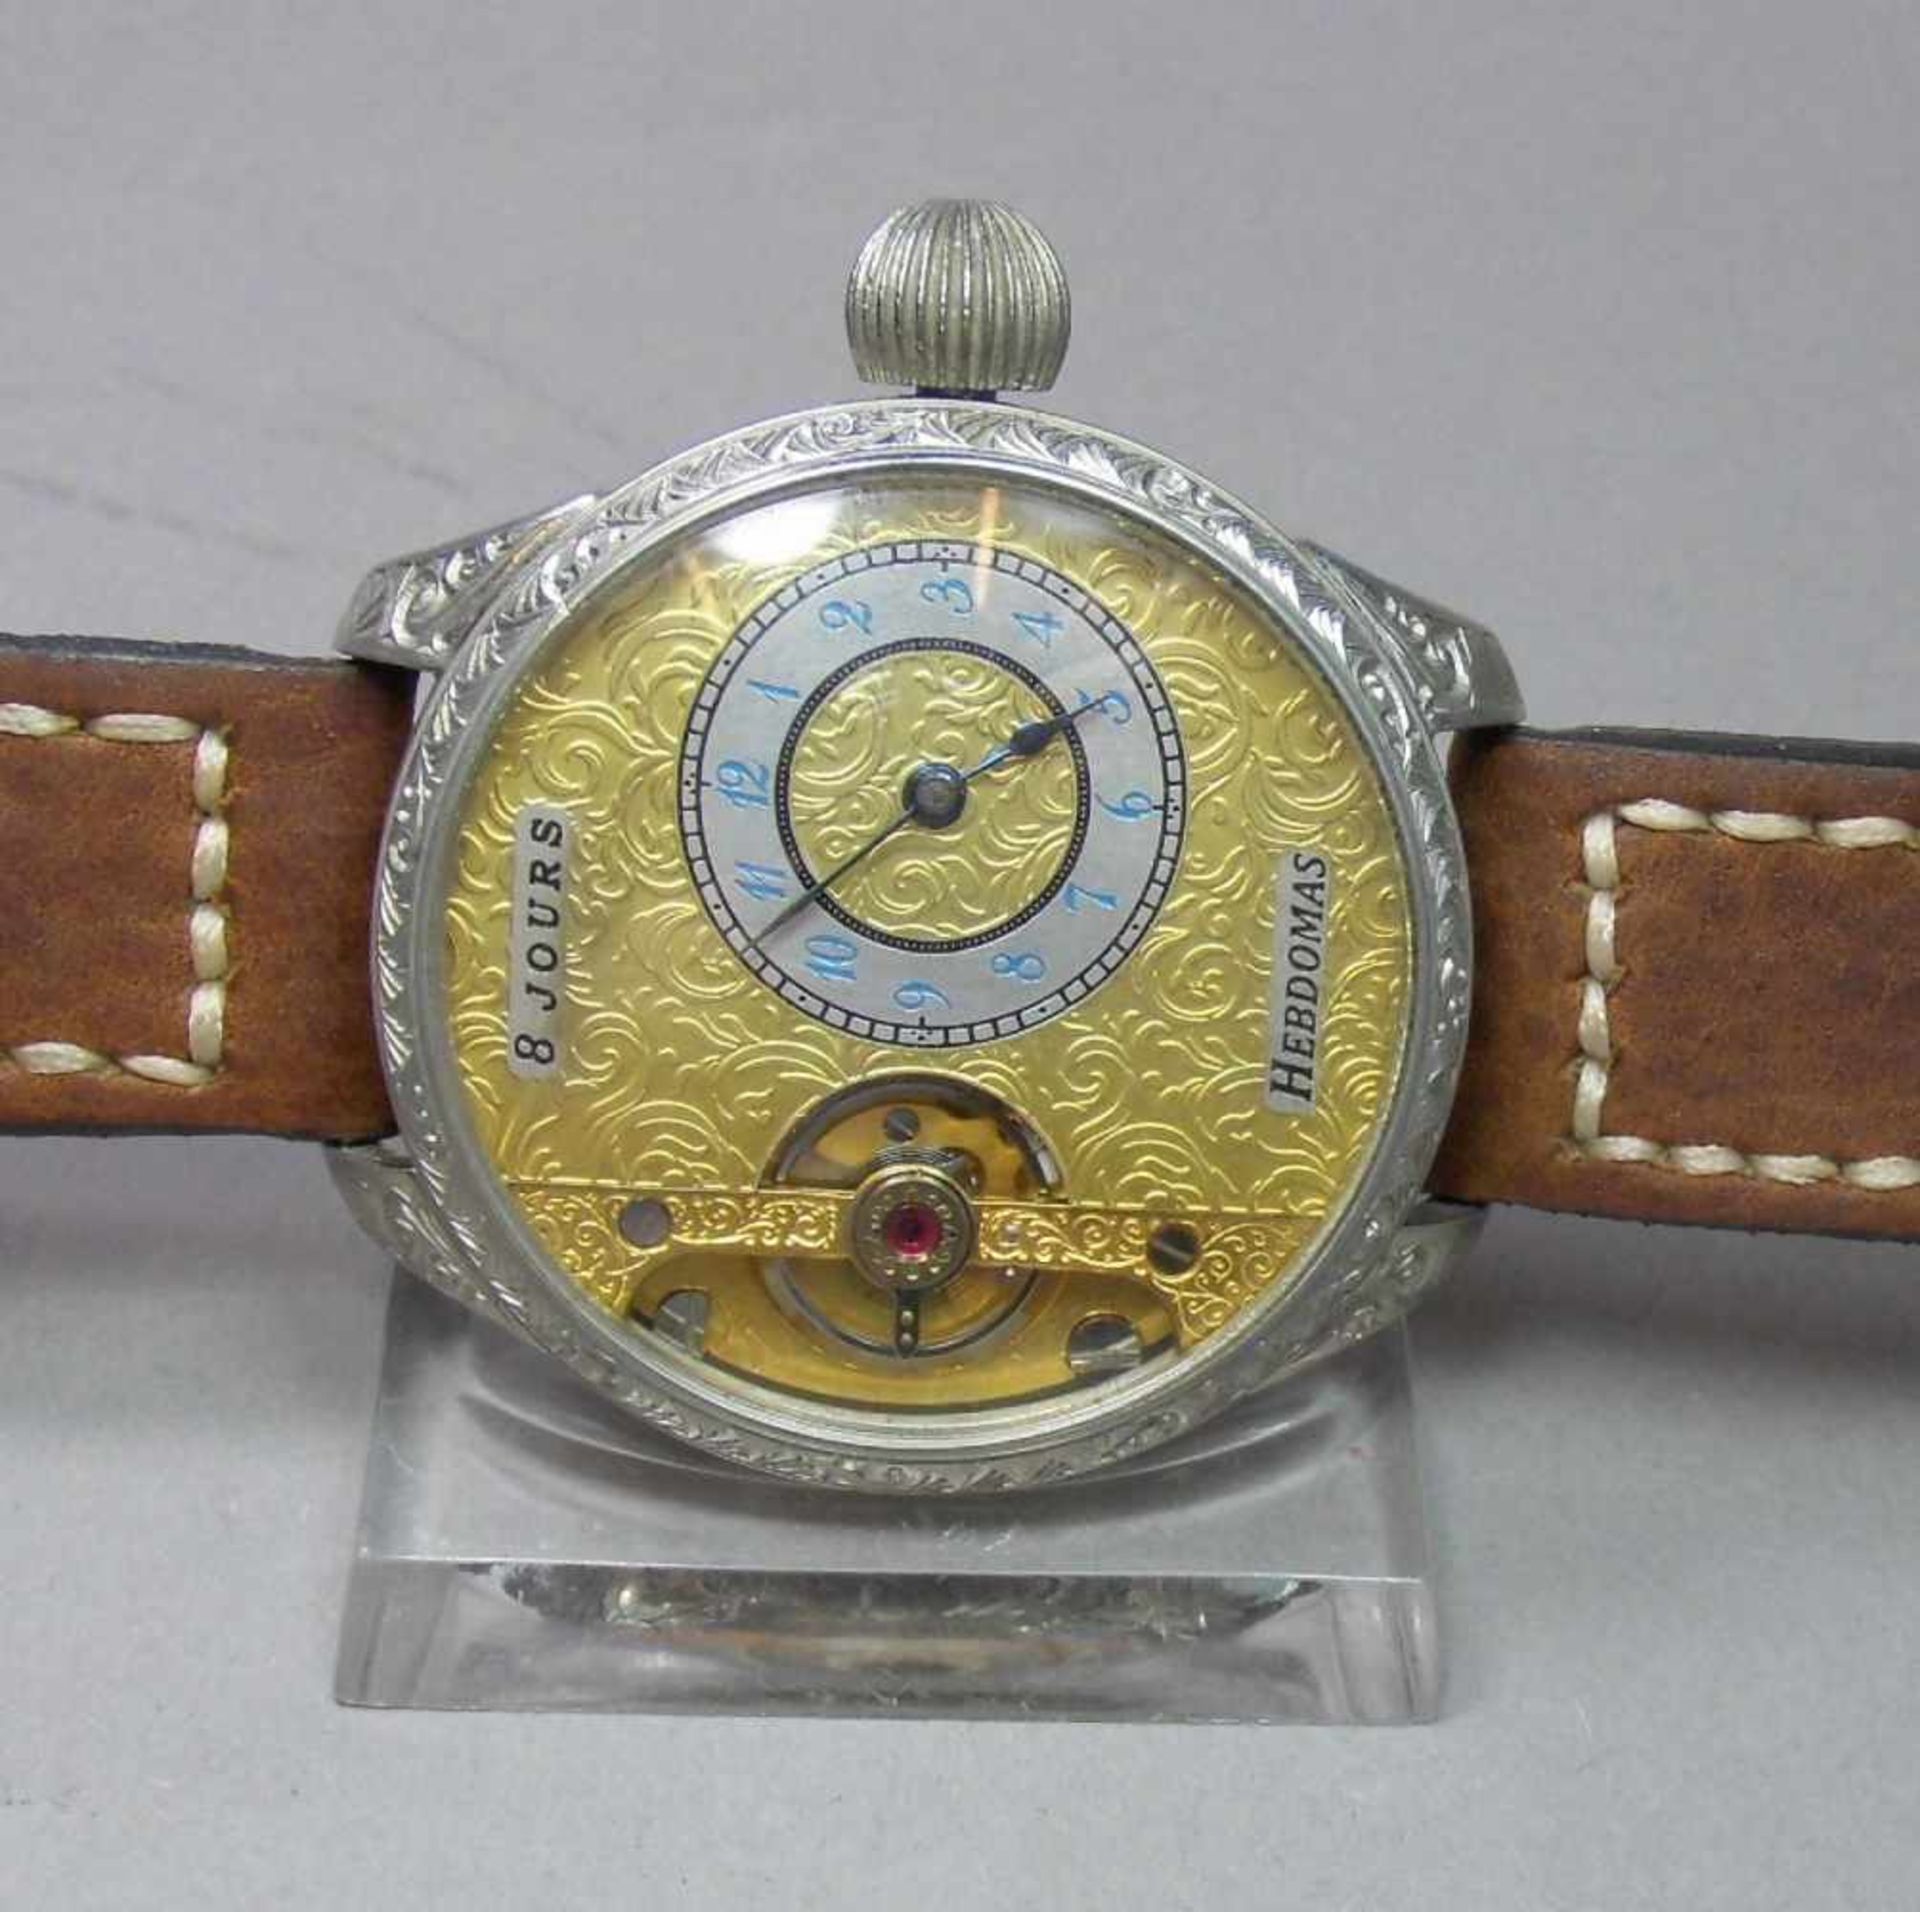 ARMBANDUHR, gearbeitet aus einer Taschenuhr / Mariage / wristwatch, 20. Jh., Handaufzug (Krone). - Image 2 of 7